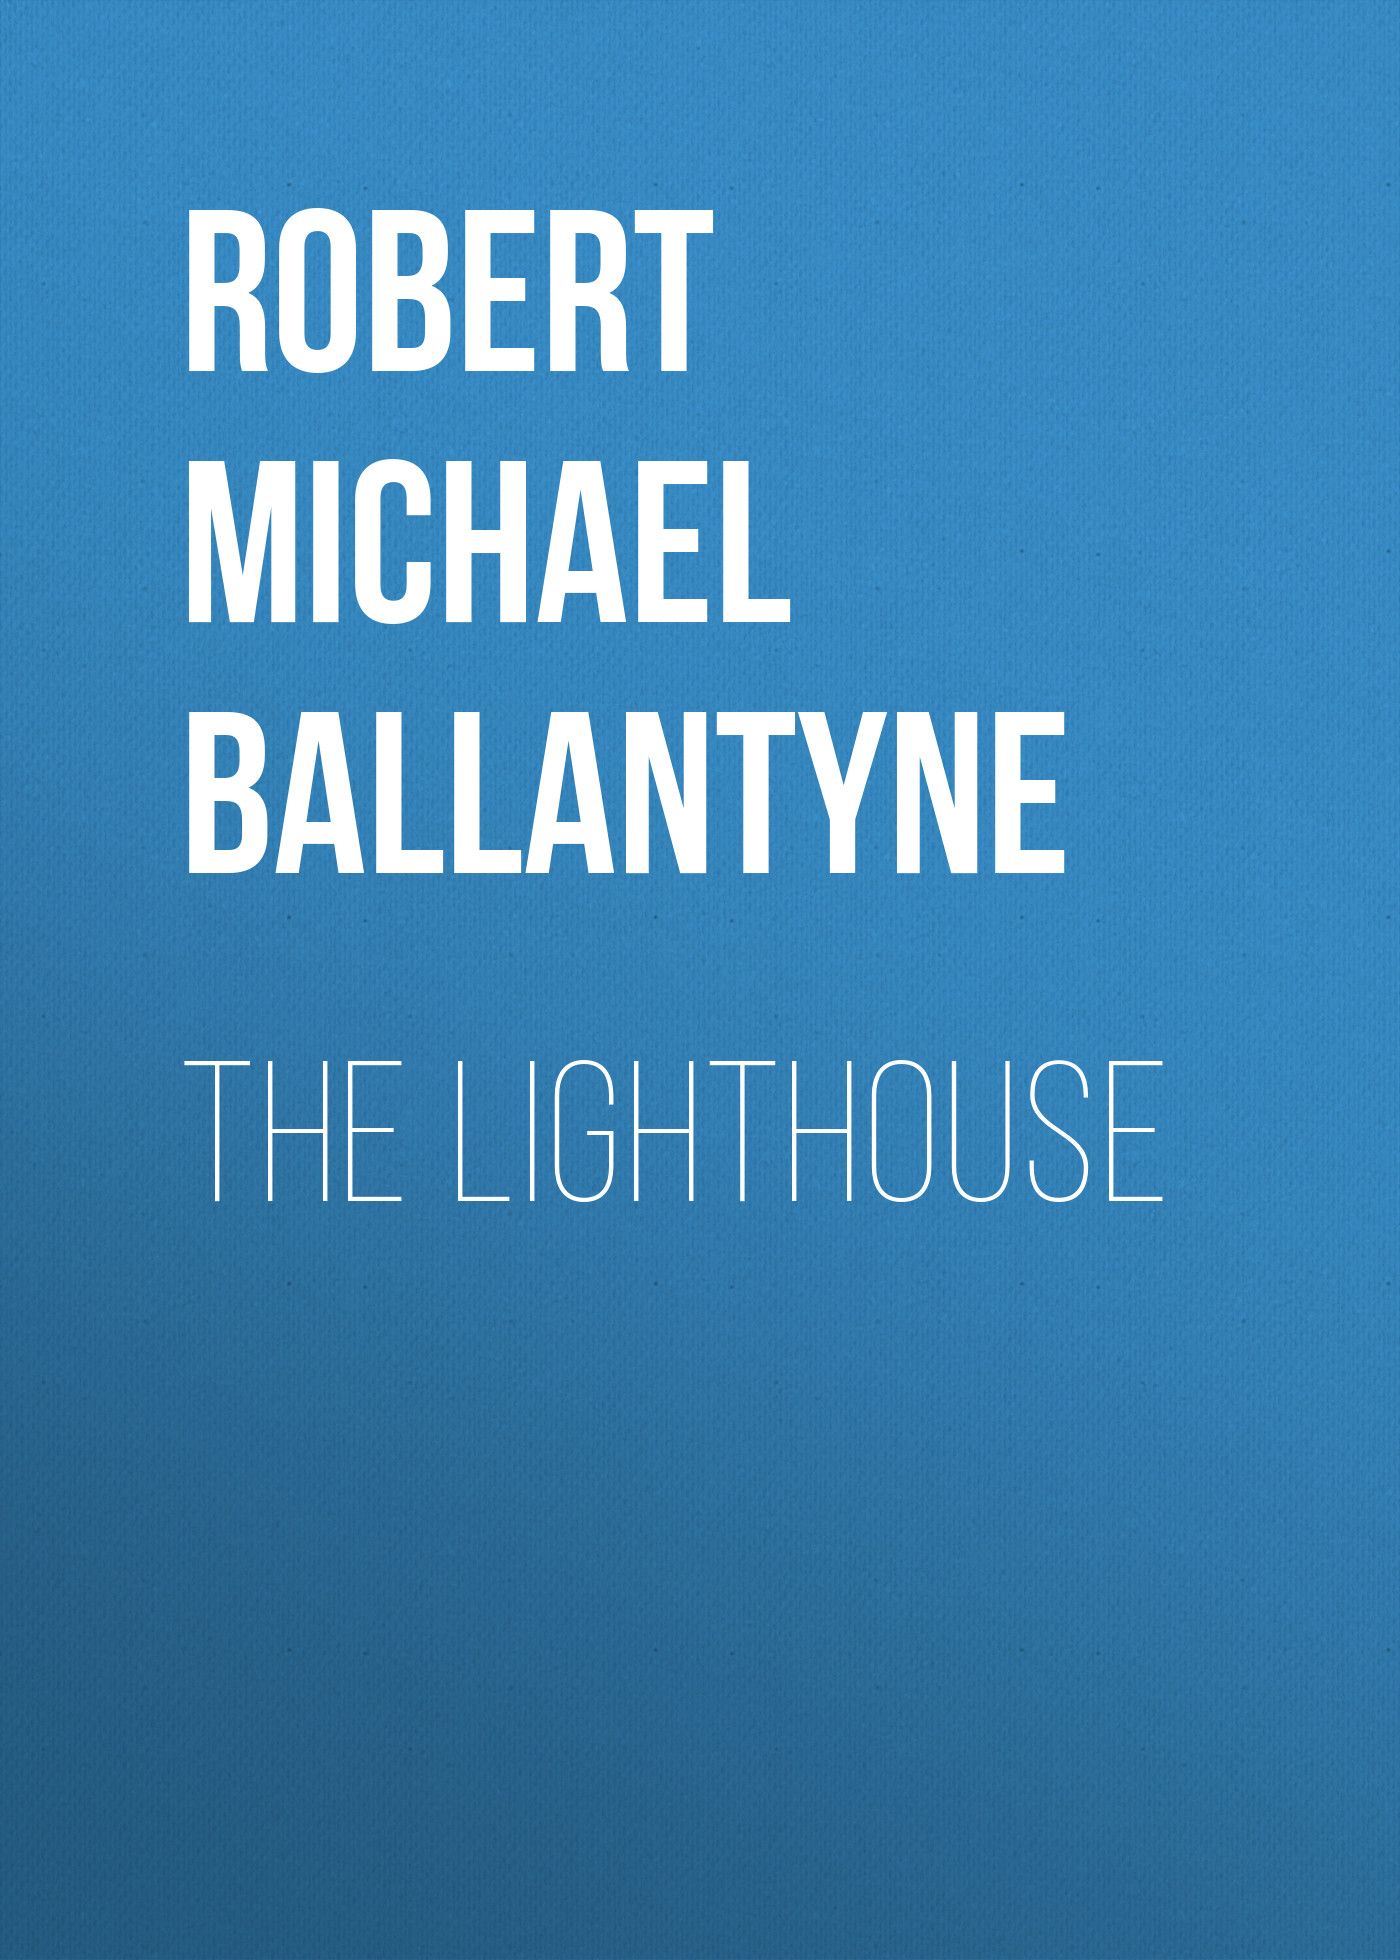 Книга The Lighthouse из серии , созданная Robert Michael Ballantyne, может относится к жанру Детские приключения, Литература 19 века, Зарубежная старинная литература, Зарубежная классика, Зарубежные детские книги. Стоимость электронной книги The Lighthouse с идентификатором 36095621 составляет 0 руб.